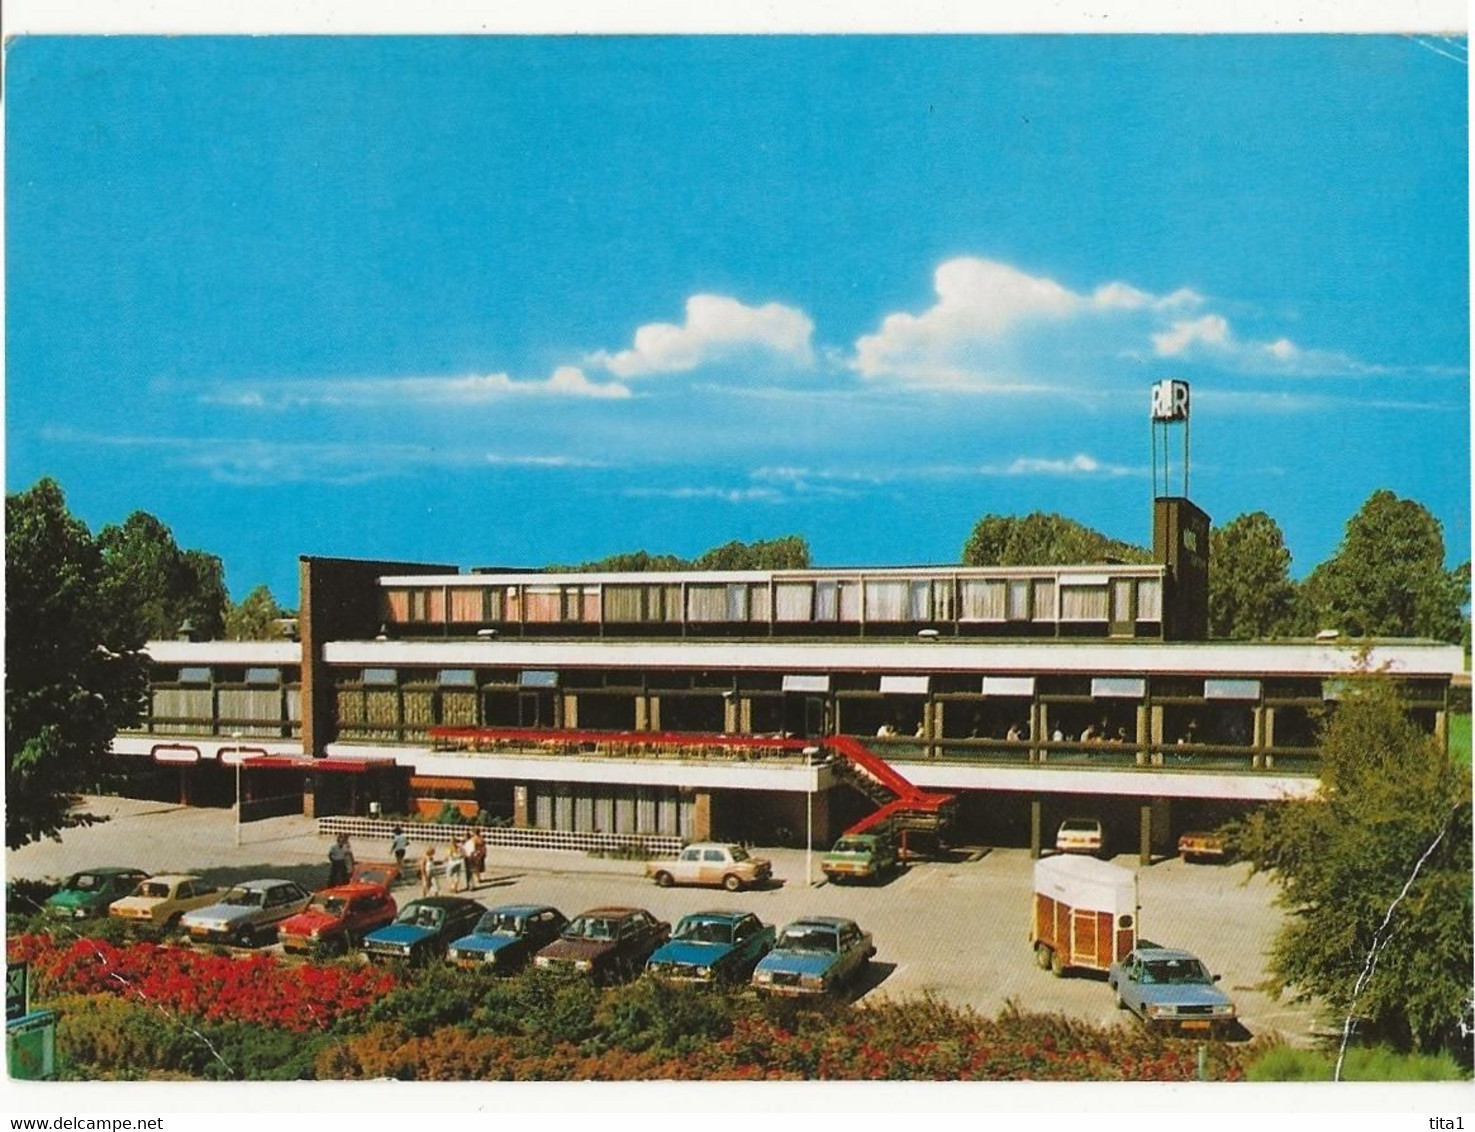 S9019 - Heerenveen -Postiljon Motel - Heerenveen